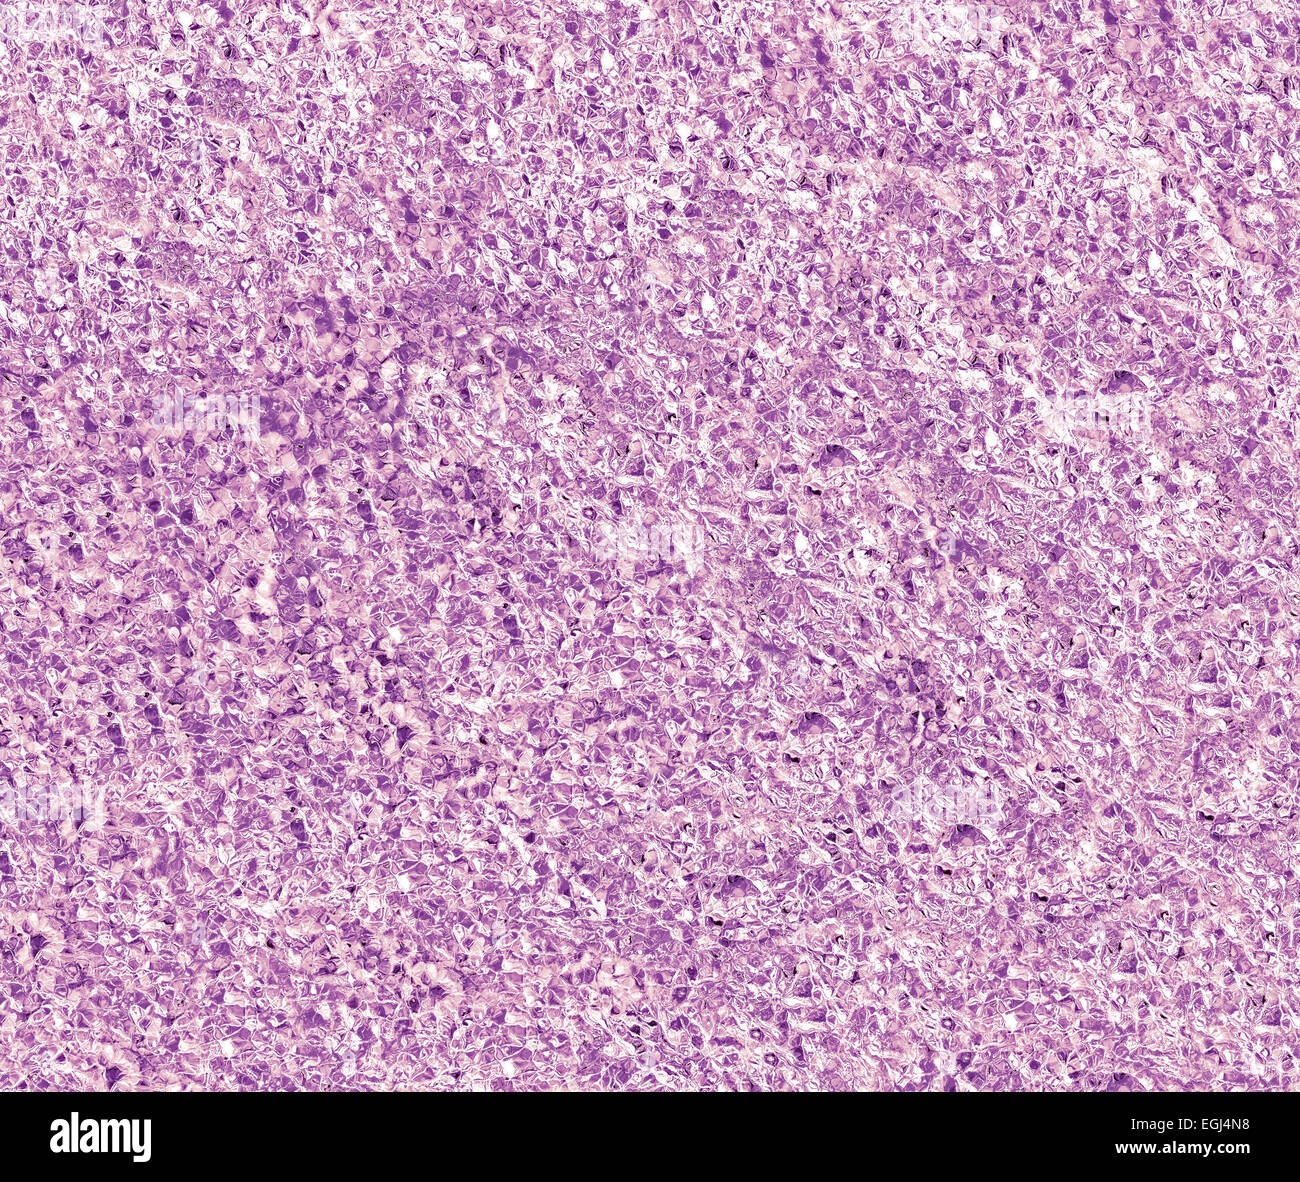 Zusammenfassung Hintergrund Granatapfel Samen Formen oder Blutzellen gebildet. Stockfoto